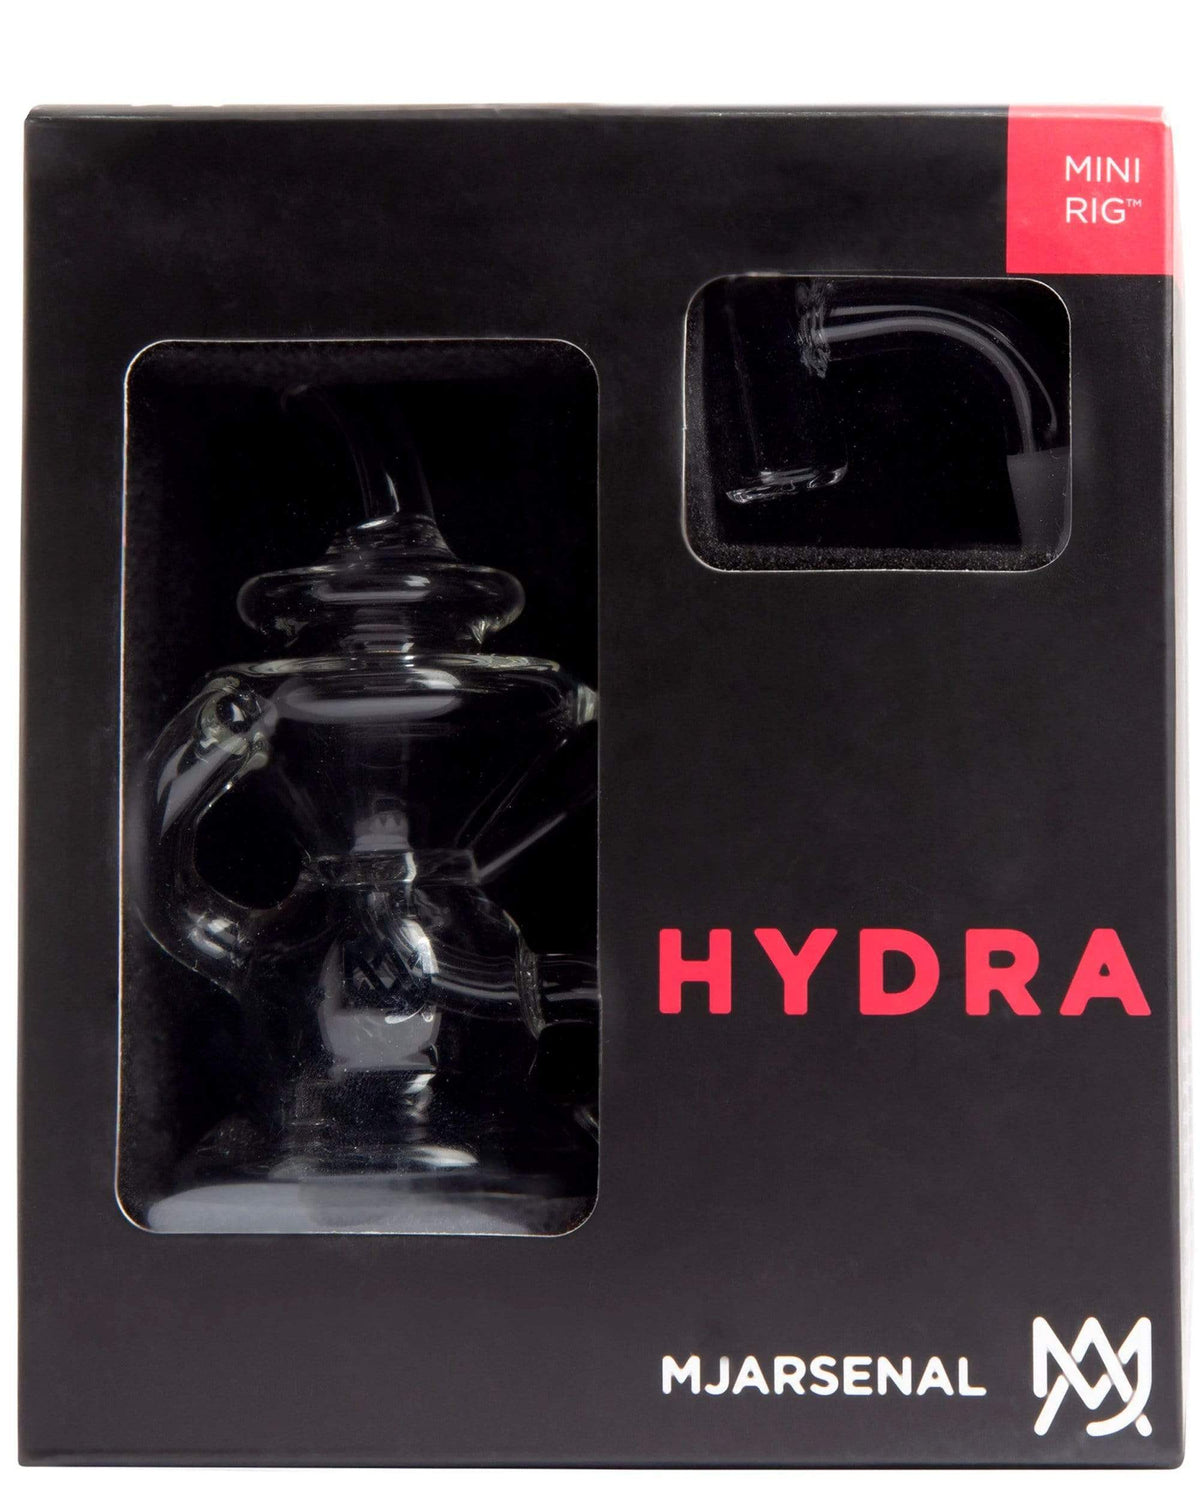 Hydra Mini Rig MJ arsenal